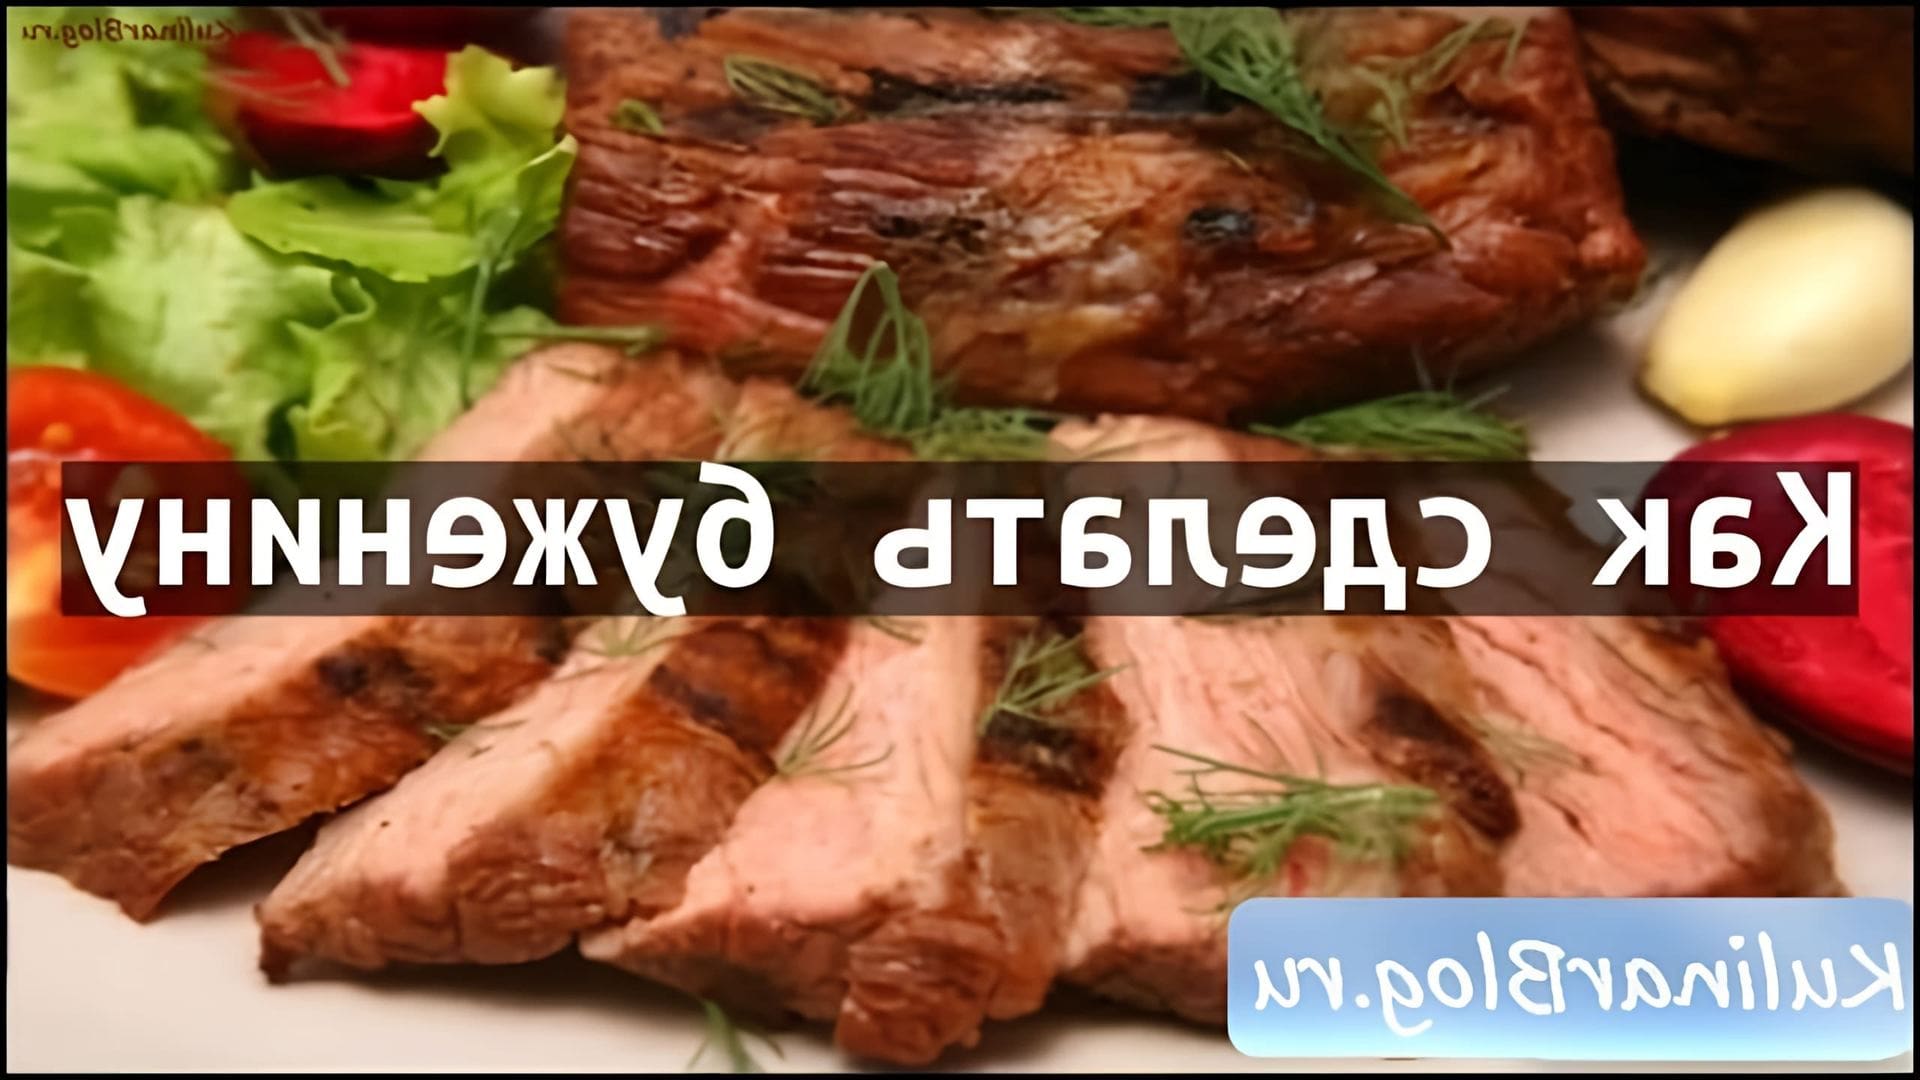 Рецепт приготовления буженины - это видео-ролик, в котором подробно описывается процесс приготовления этого вкусного и ароматного блюда